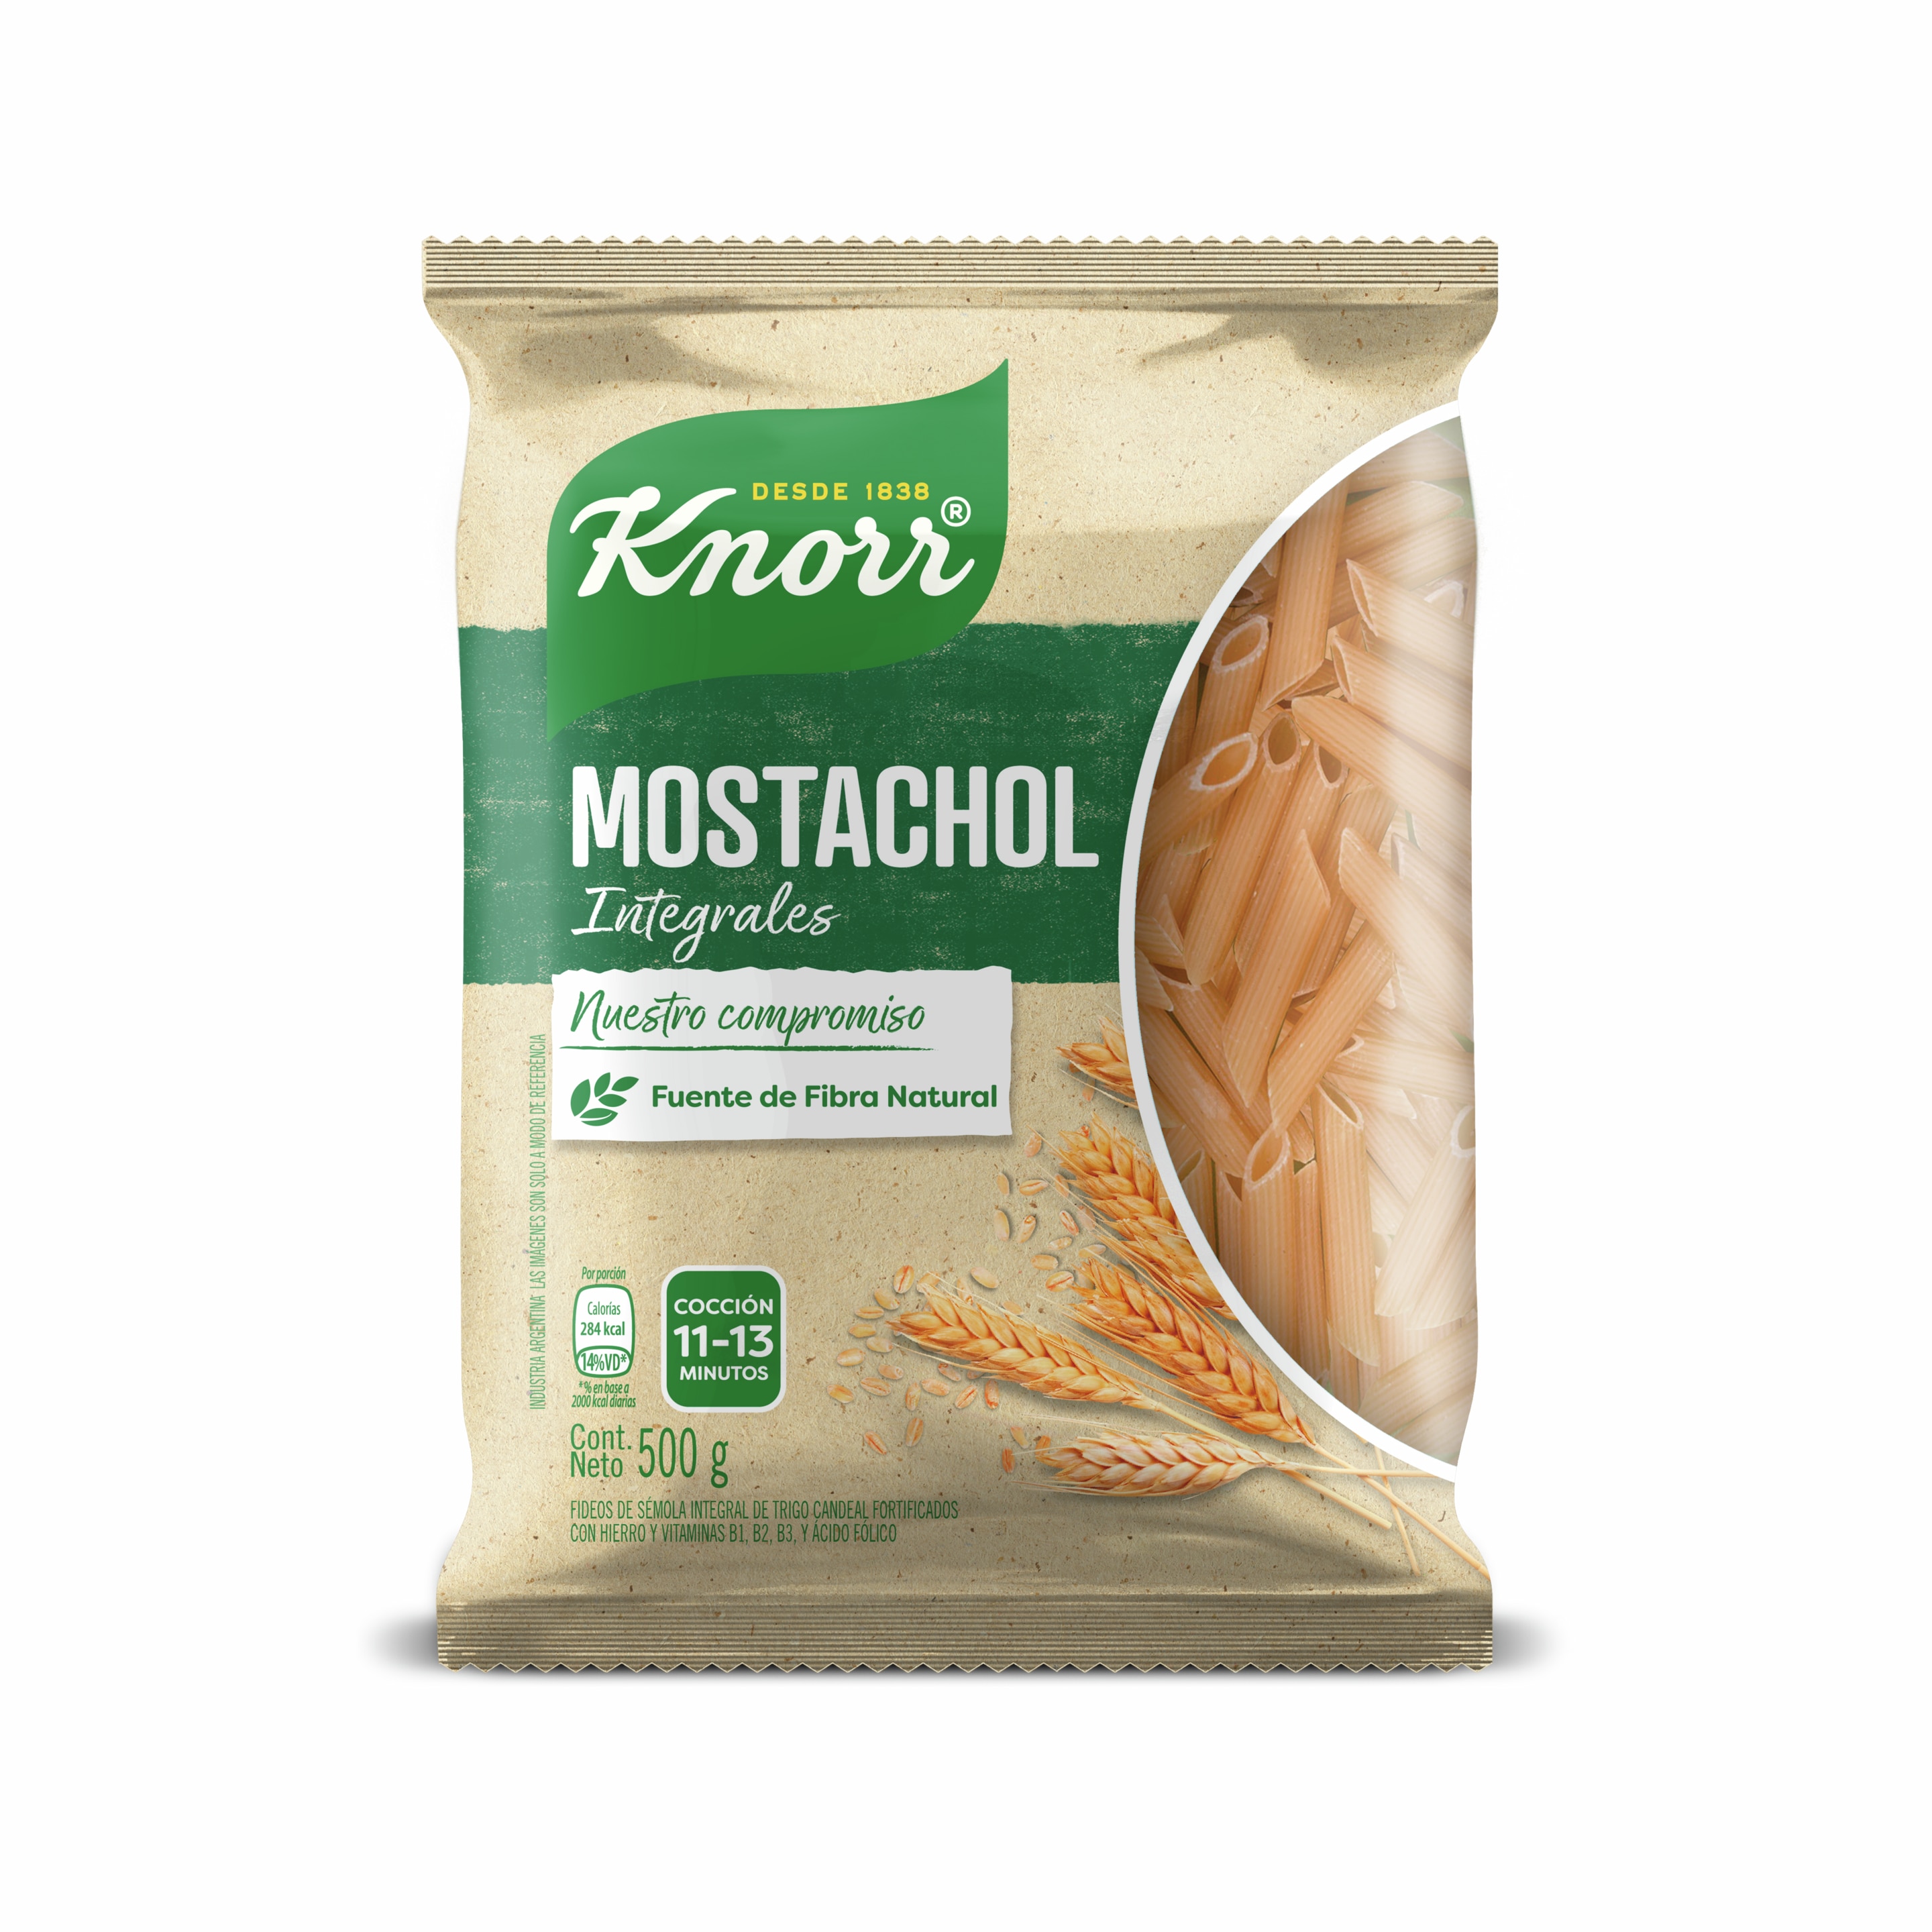 Imagen de envase Pastas Mostachol Integrales Knorr